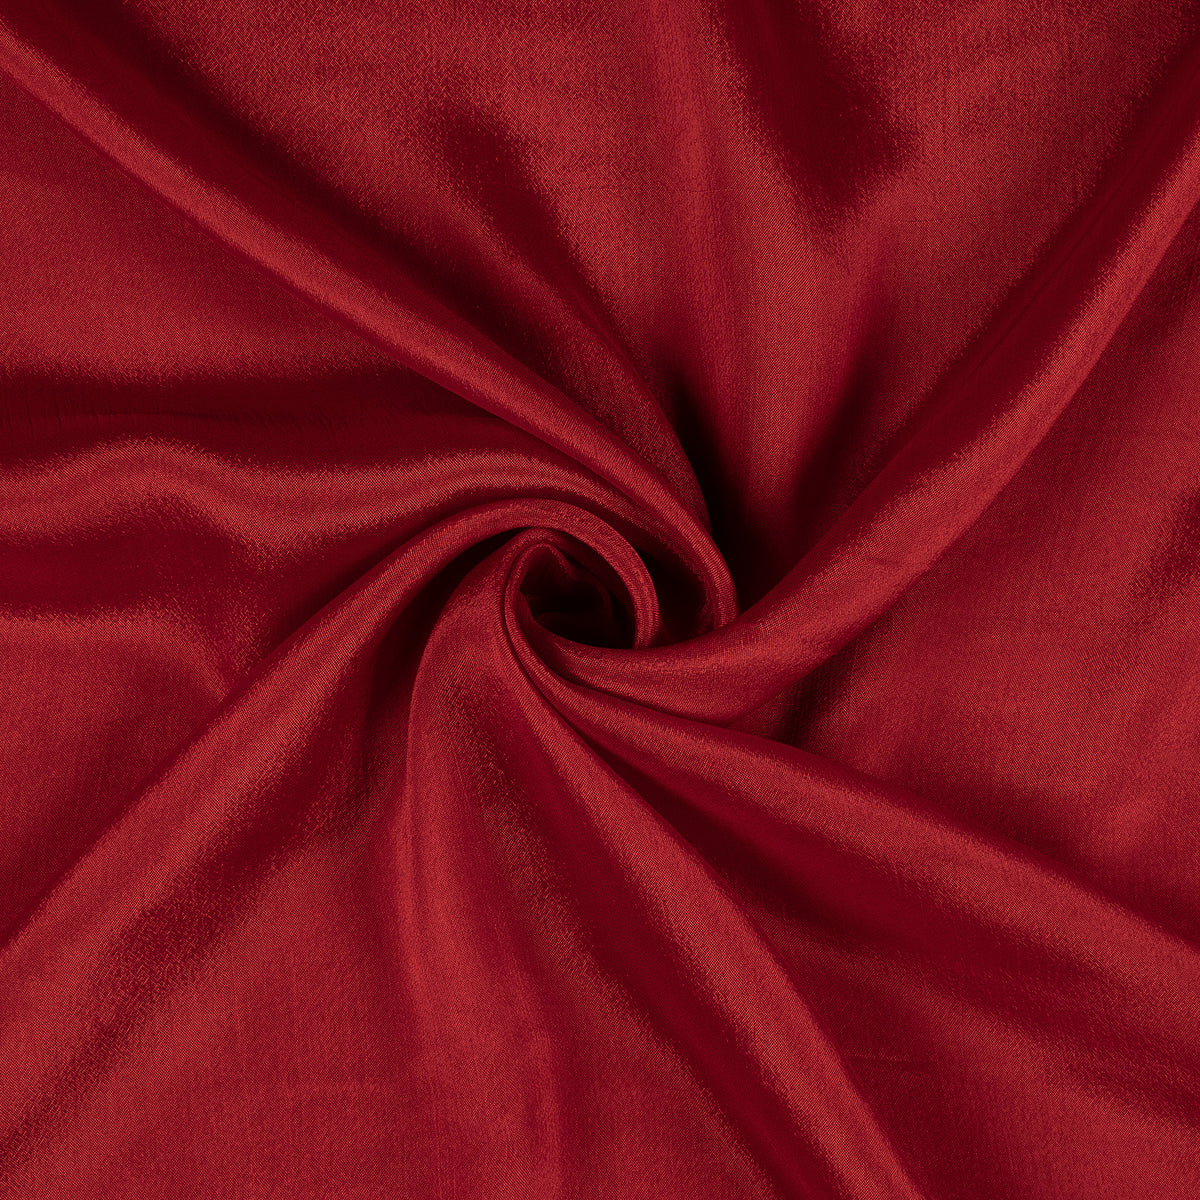 Blood Red Plain Pure Chinnon Chiffon Fabric